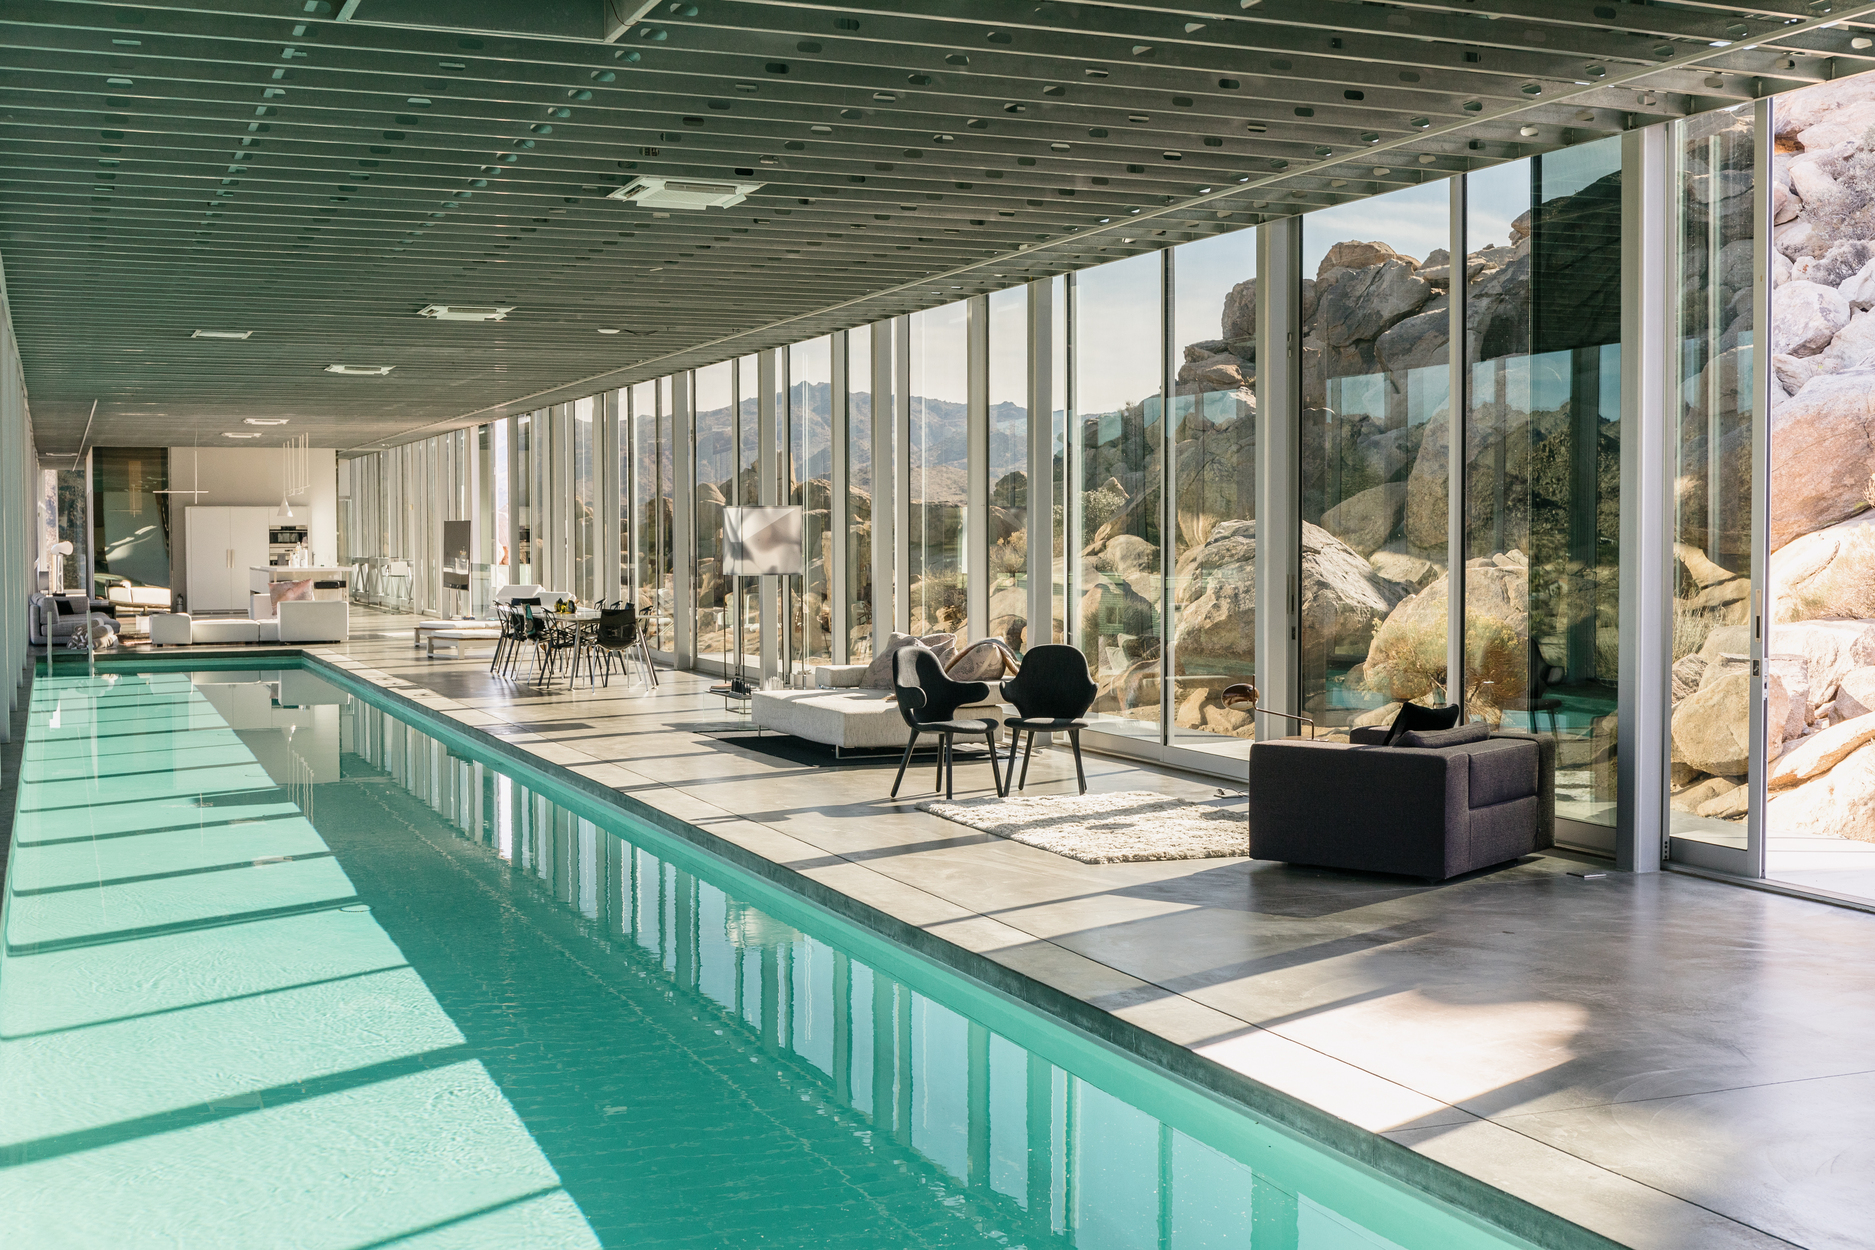 長 100 英尺的室內泳池搭配玻璃牆幕，營造出前衛又超現實的空間場景。